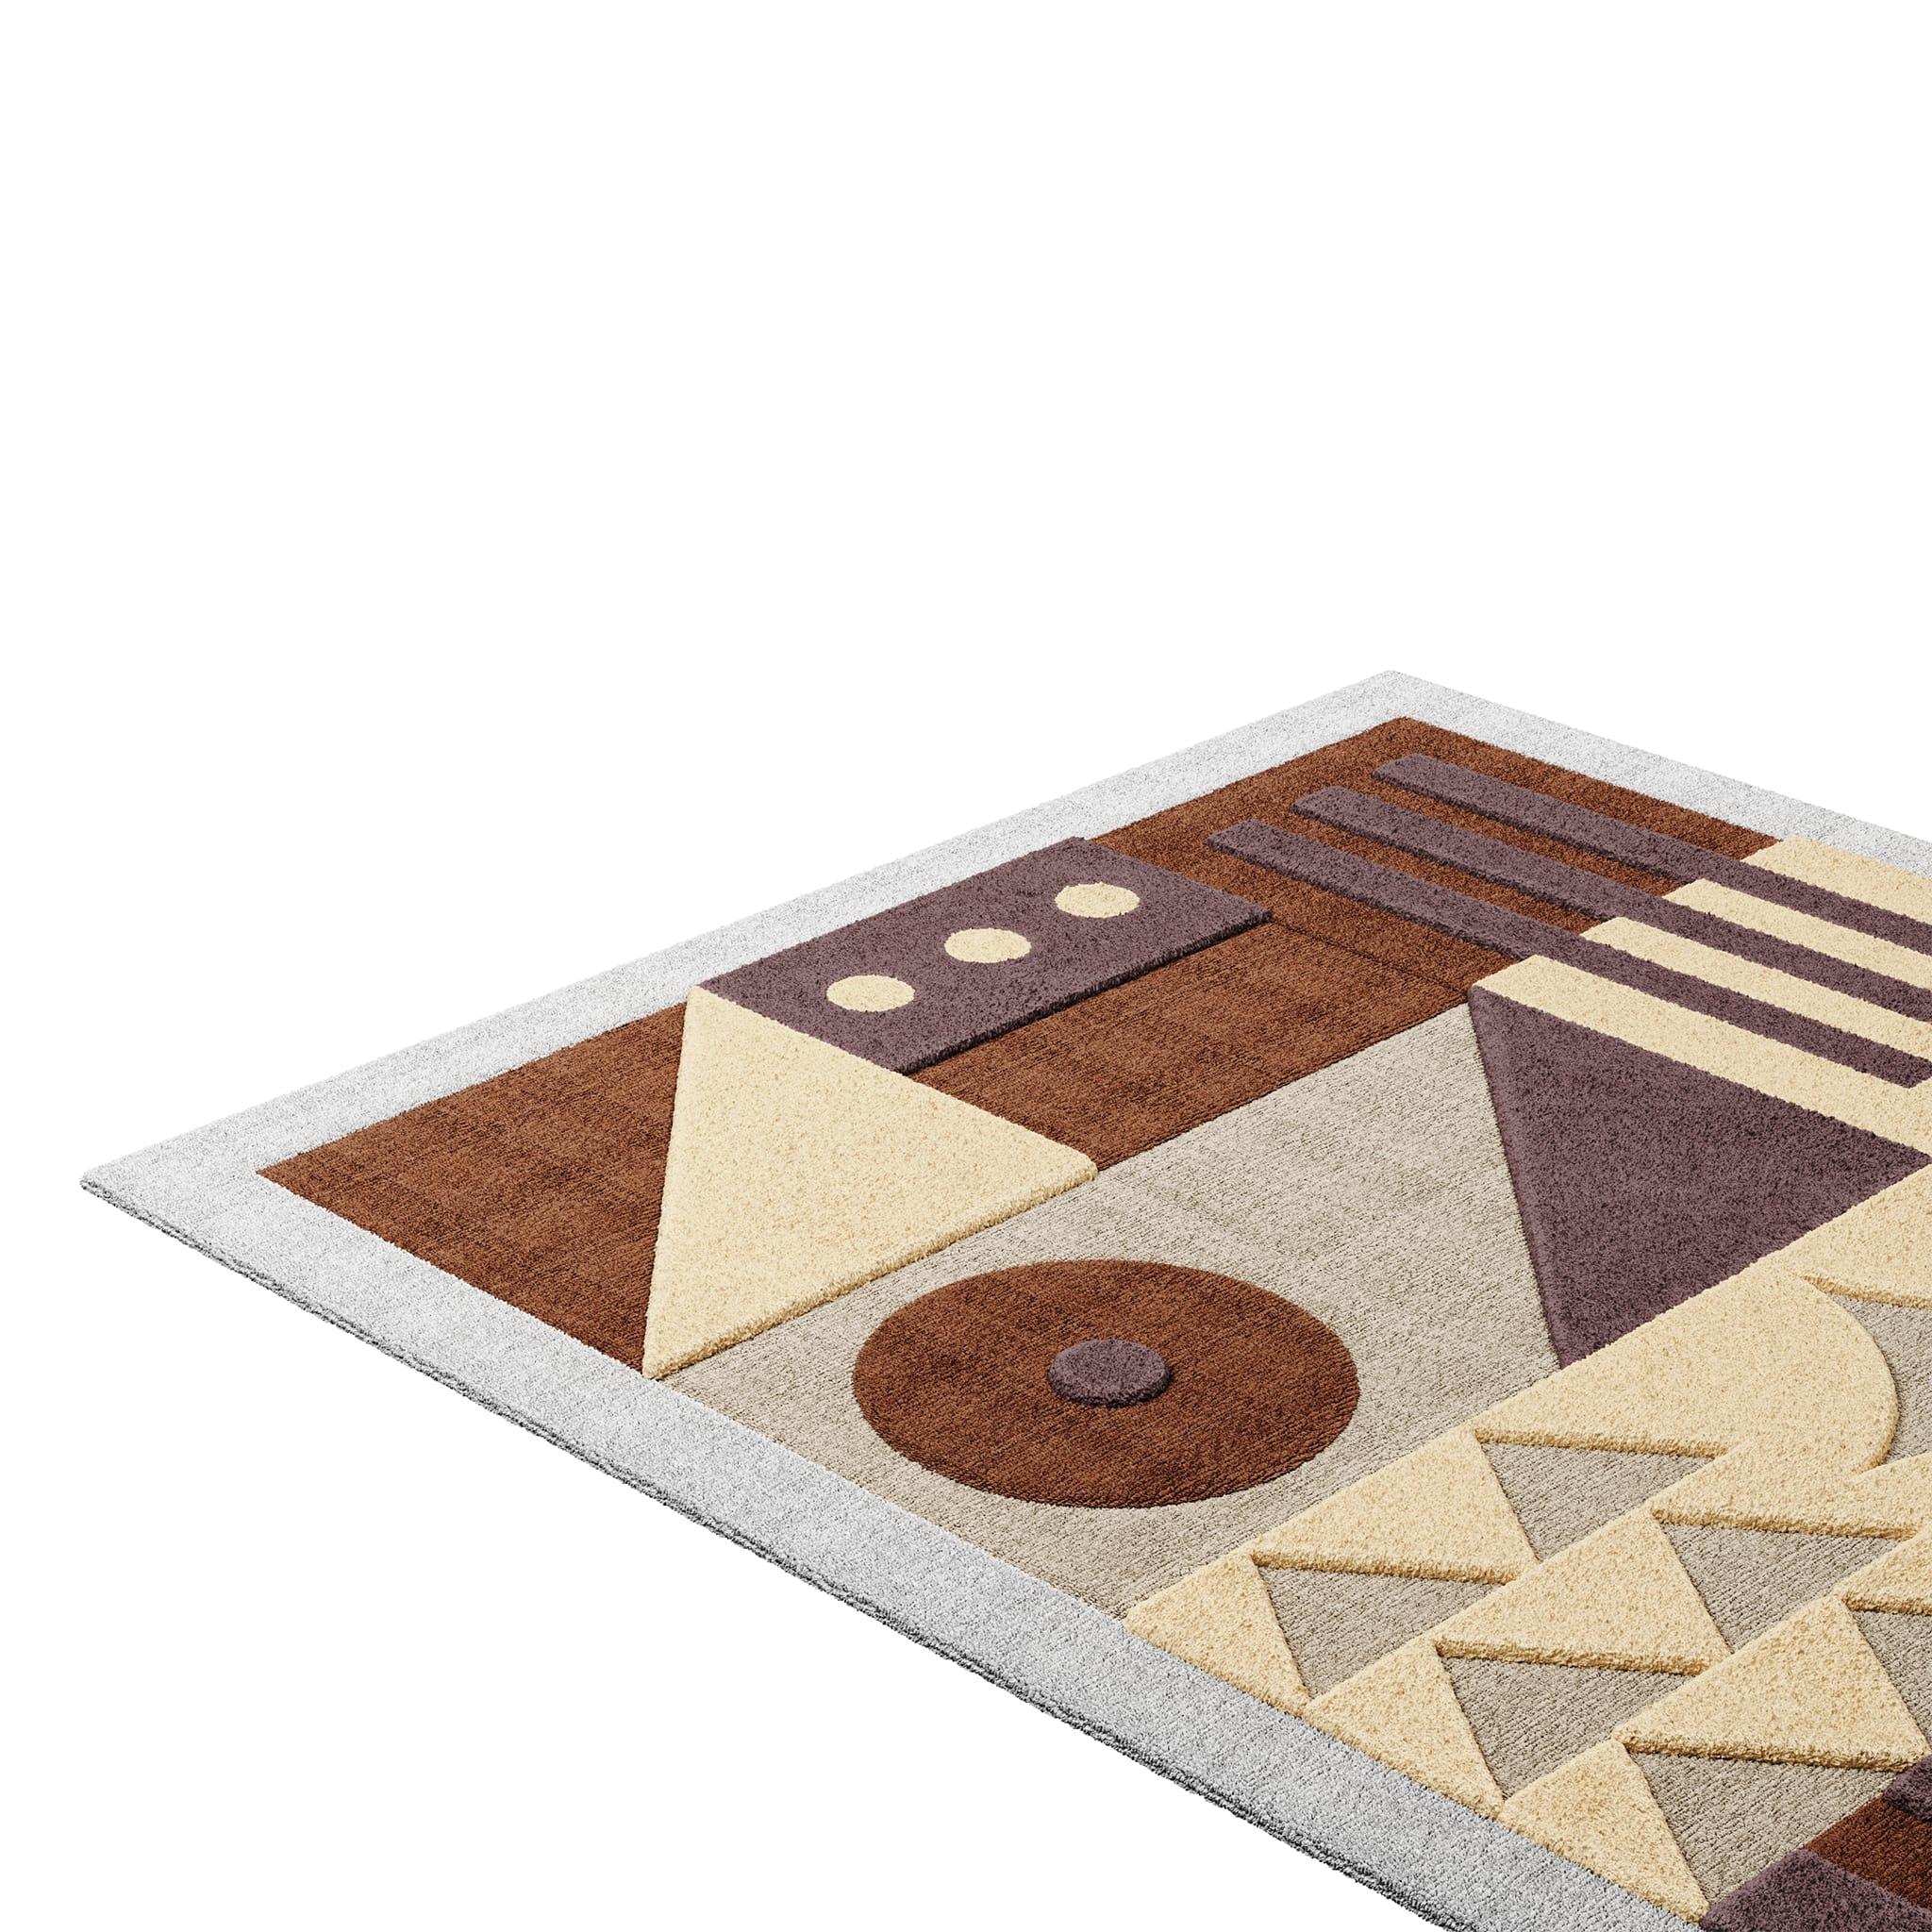 Tapis Pastel #12 est un tapis pastel qui mélange les vibrations modernes du milieu du siècle avec le style Design/One. La combinaison de teintes sourdes ajoute de la luminosité et du confort à n'importe quelle pièce. 
Ce tapis d'extérieur pastel